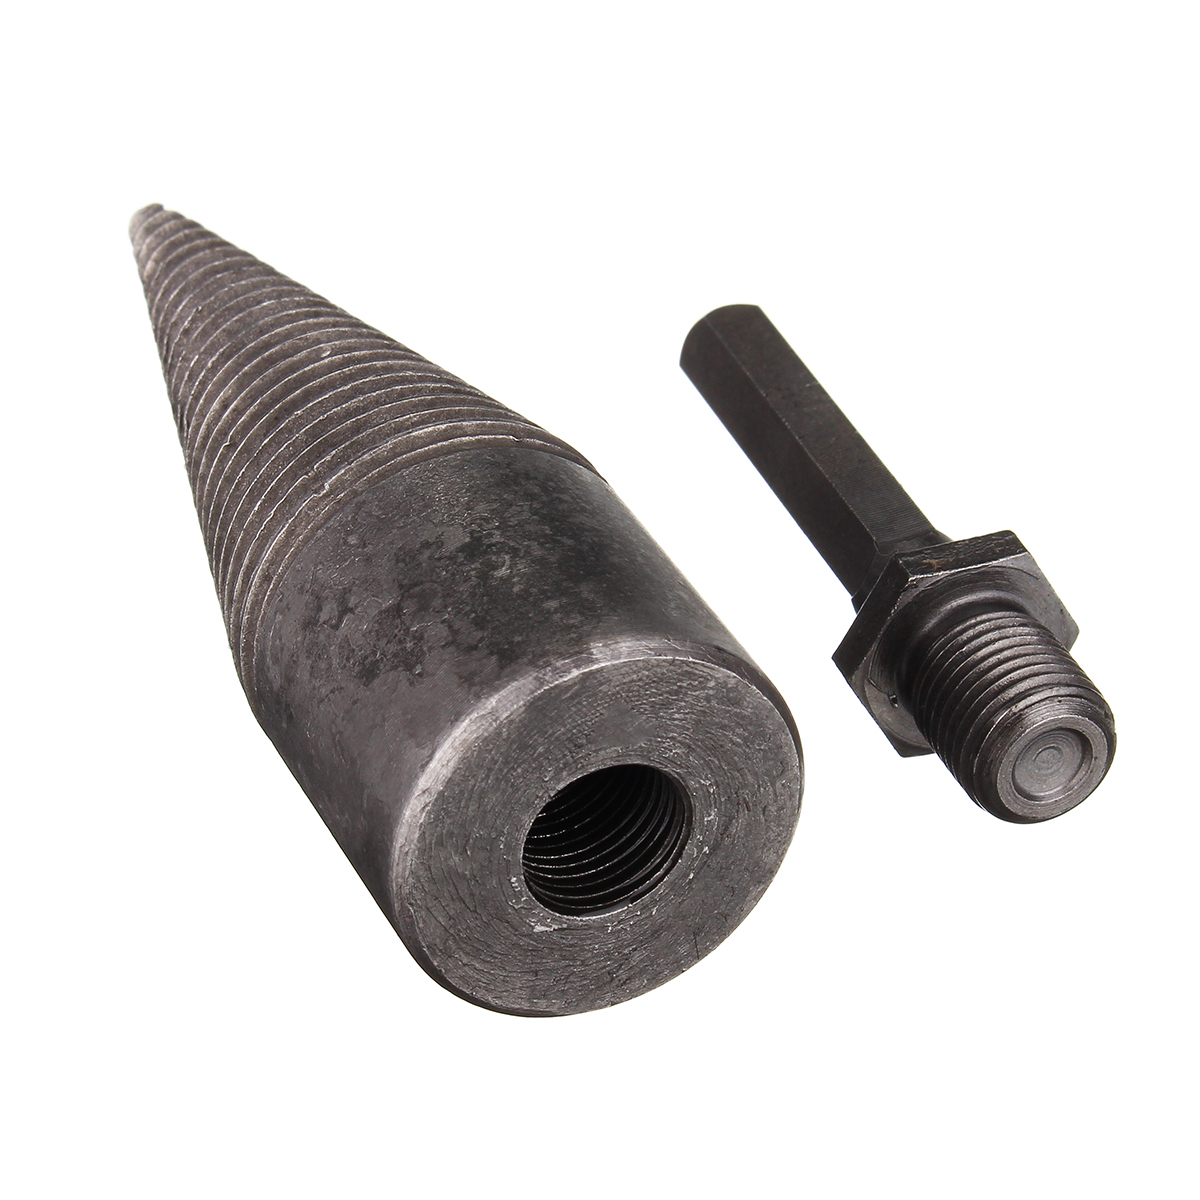 Hex-ShankSquare-Handle-Firewood-Splitting-Drill-Bit-Wood-Cone-Drilling-Tools-Kit-1632546-8